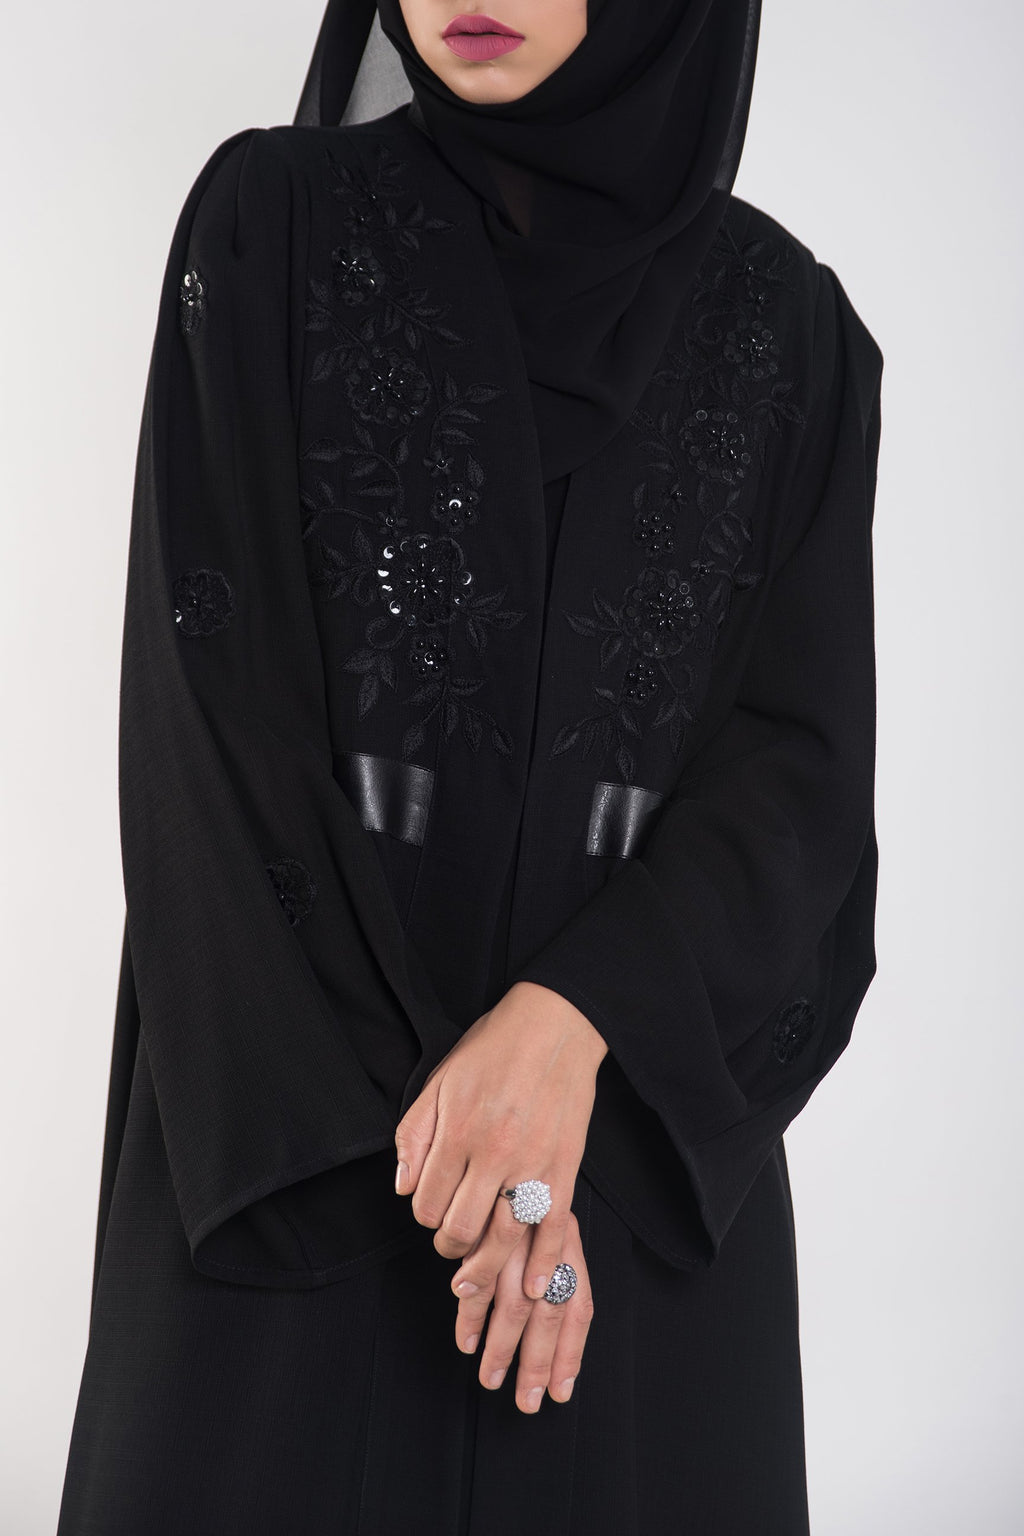 royal black abaya - thowby - branded luxury abayas in dubai